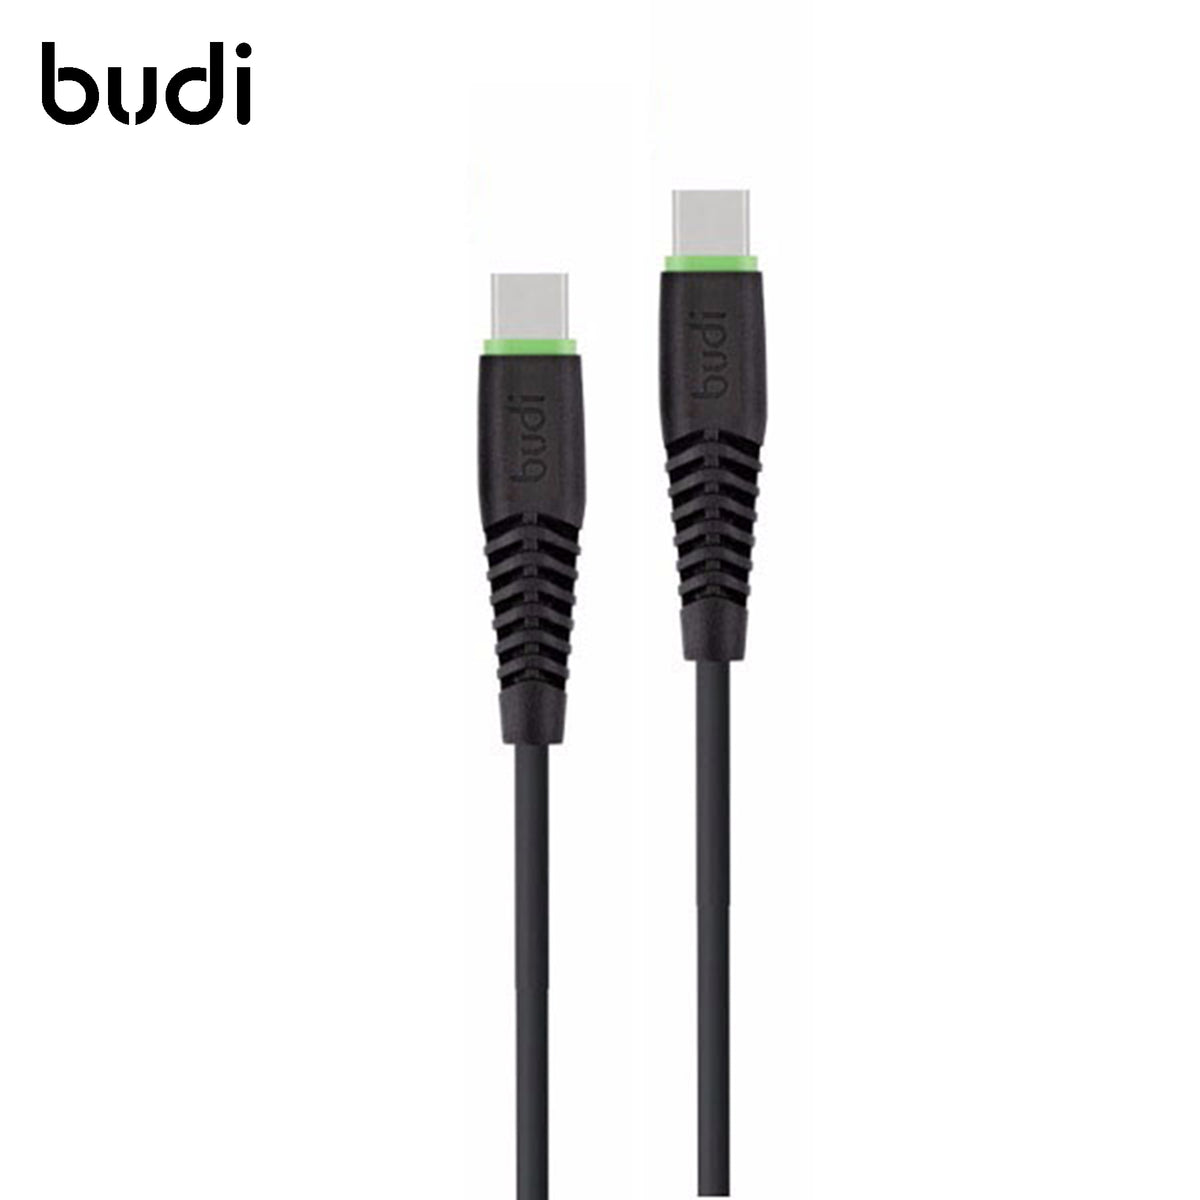 Cable Budi noir qualité premium pour Type C - Type C